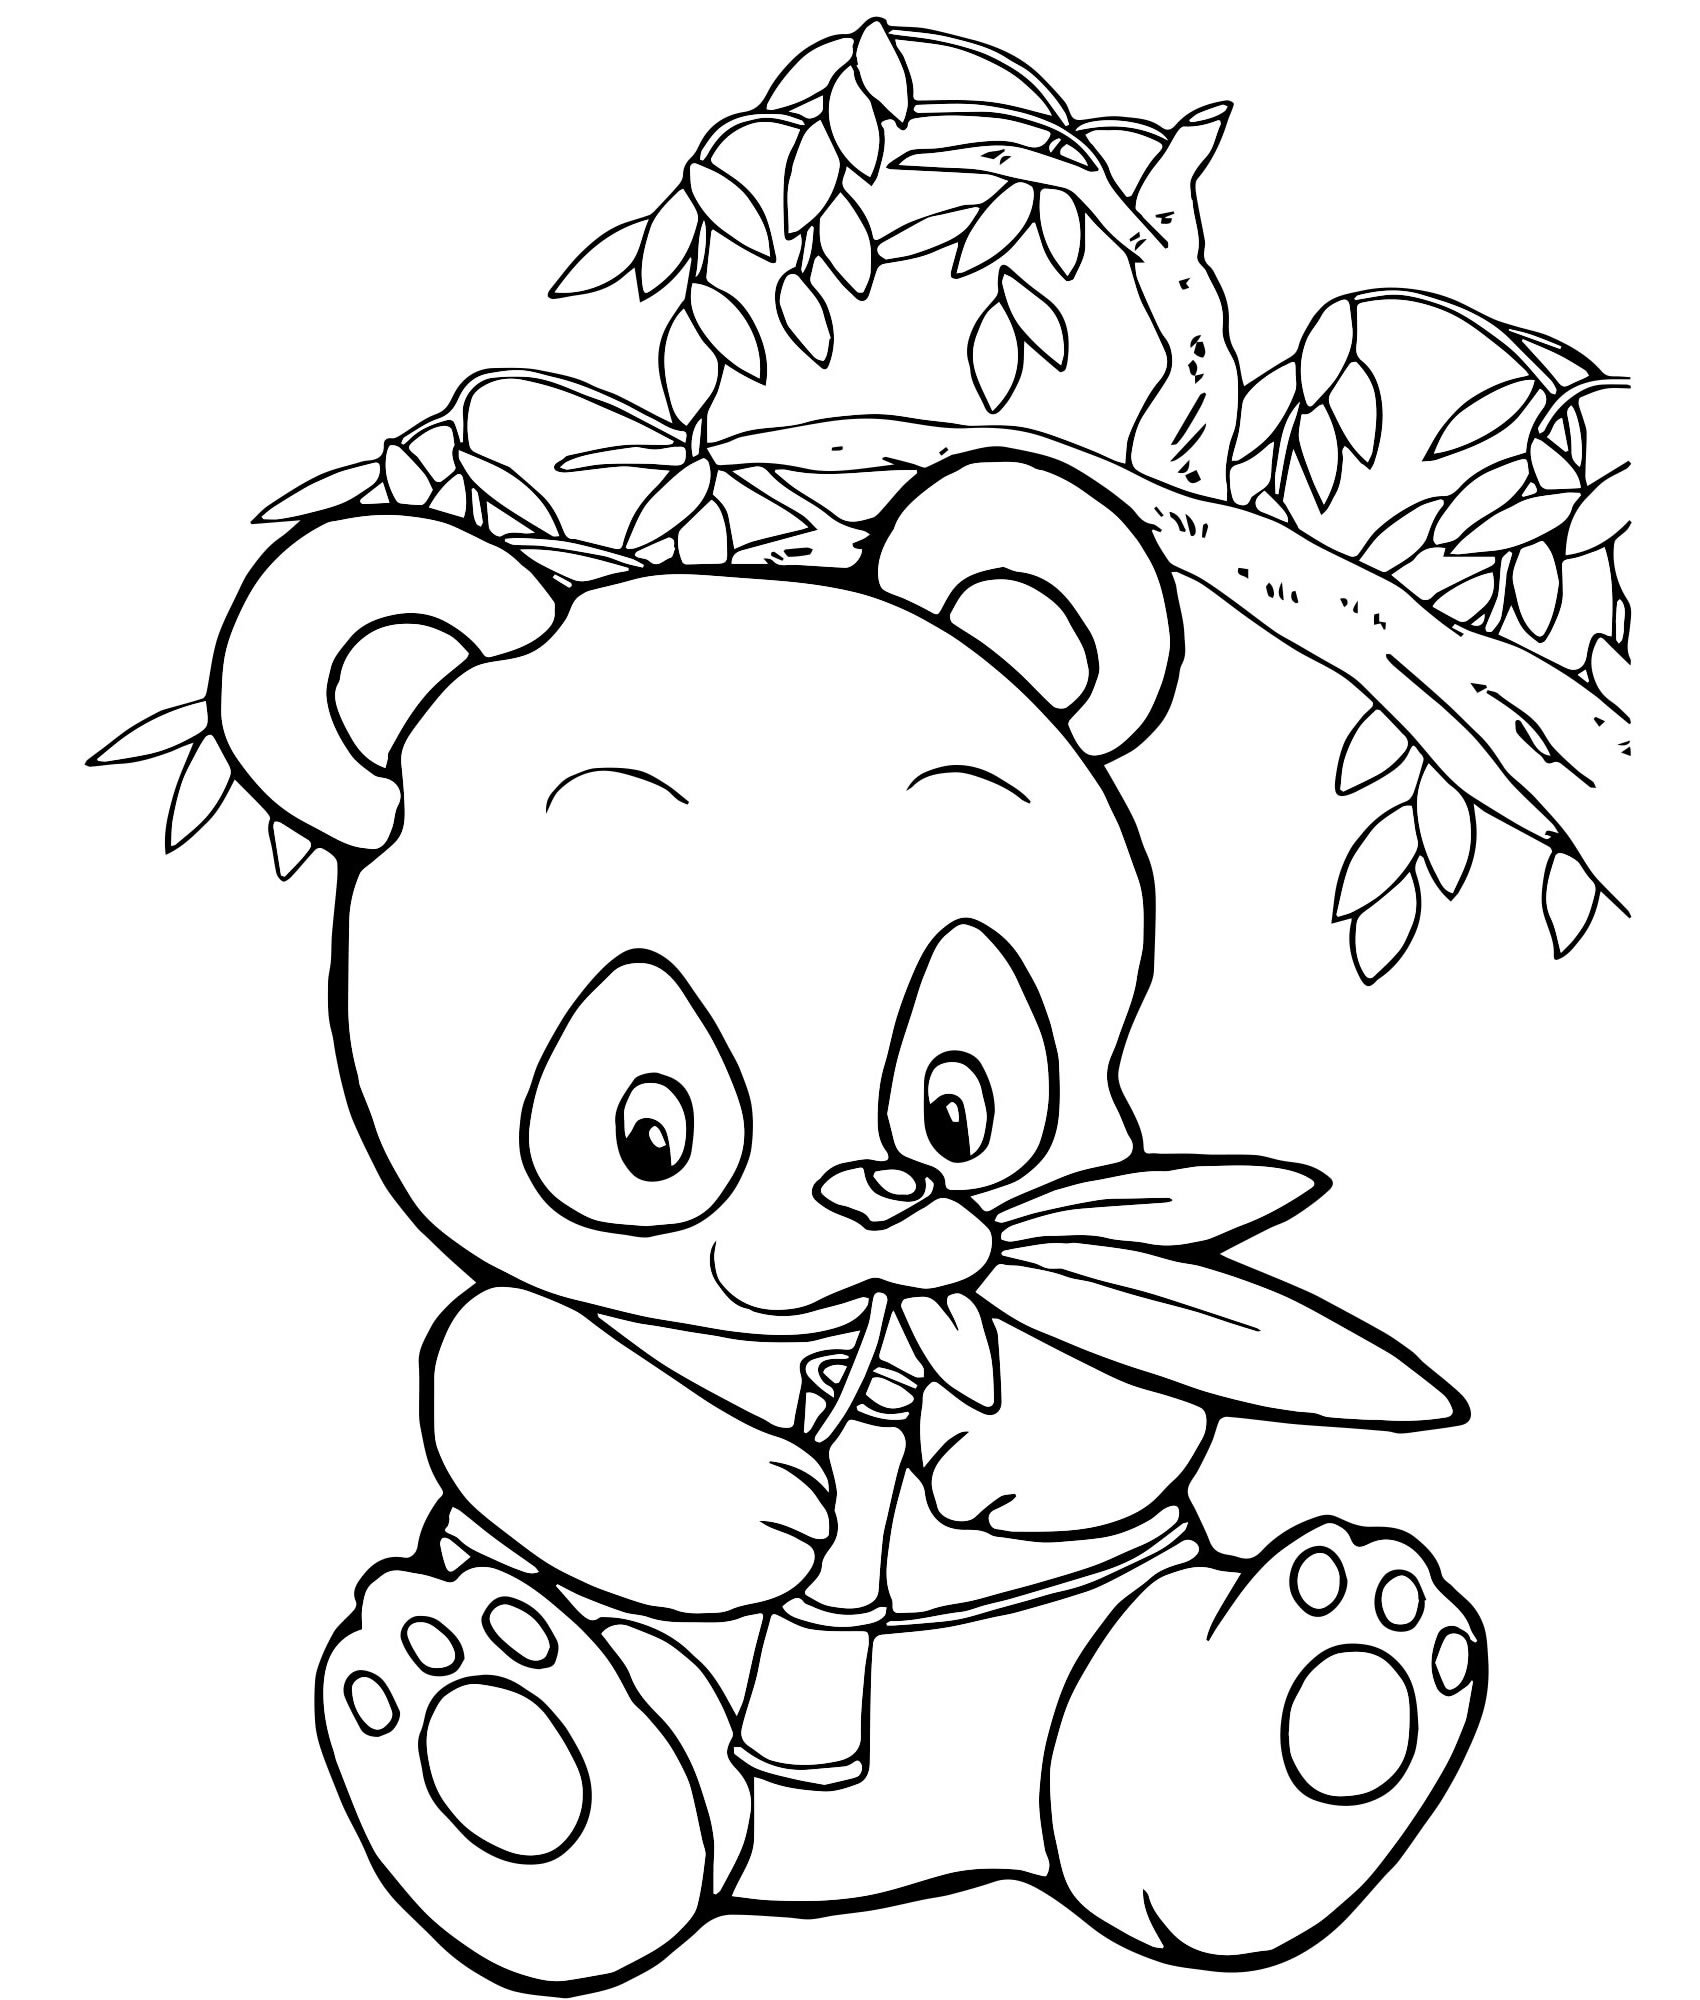 Детская раскраска Панда